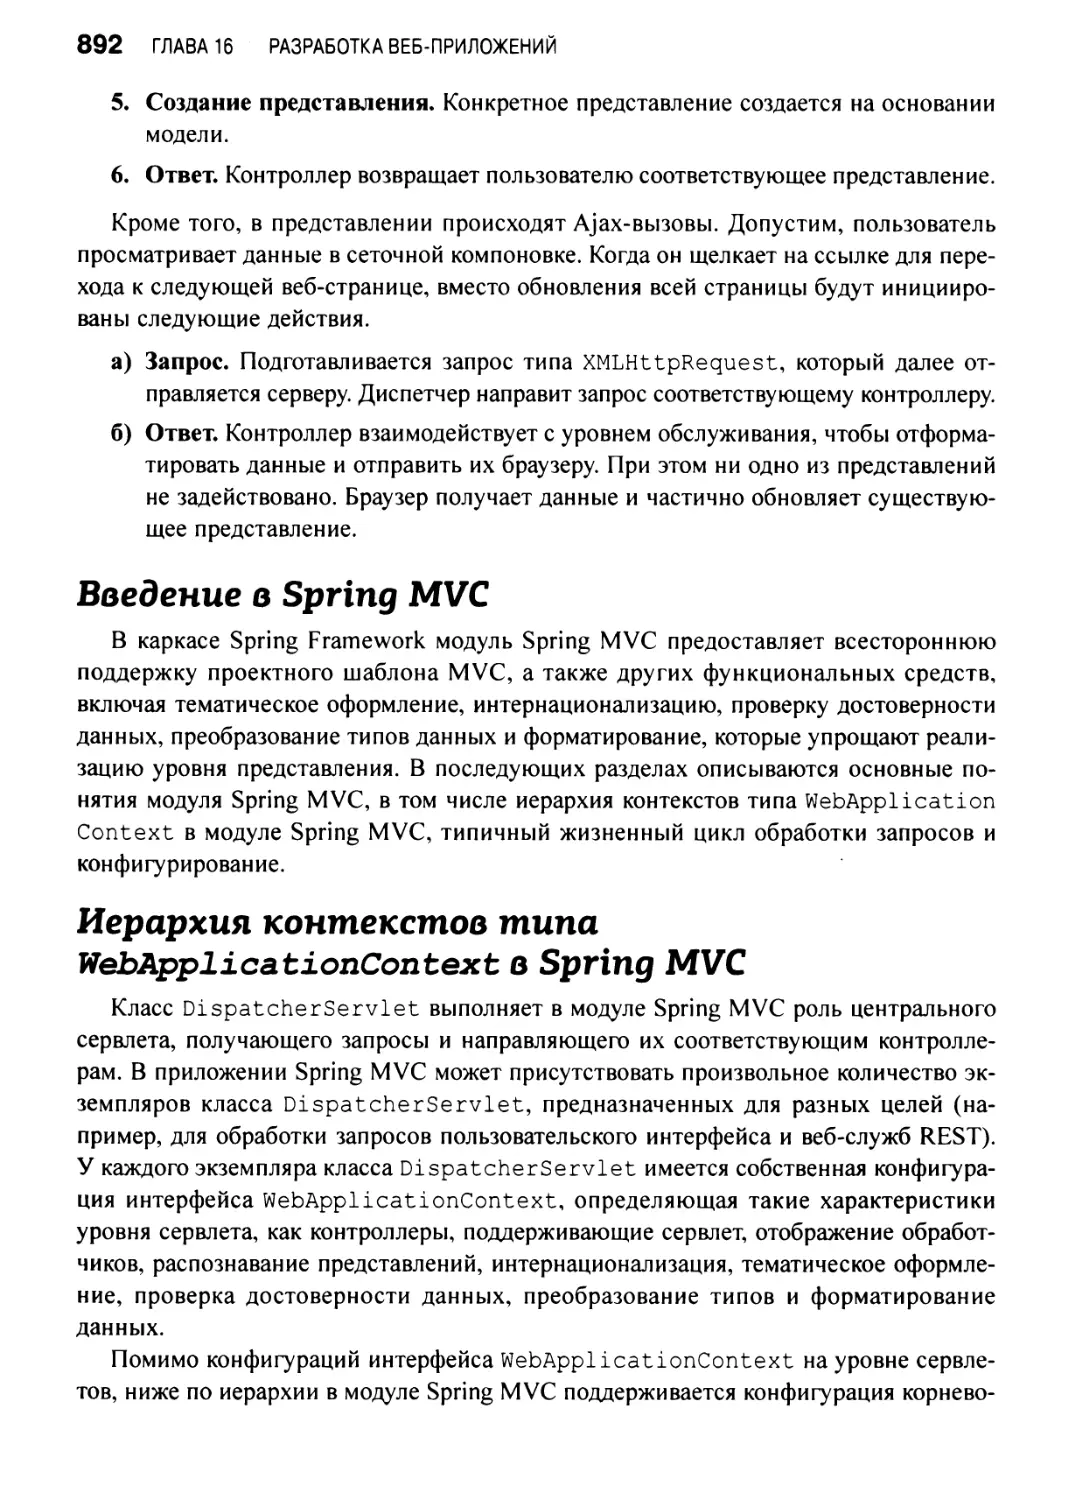 Иерархия контекстов типа WebApplicationContext в Spring MVC